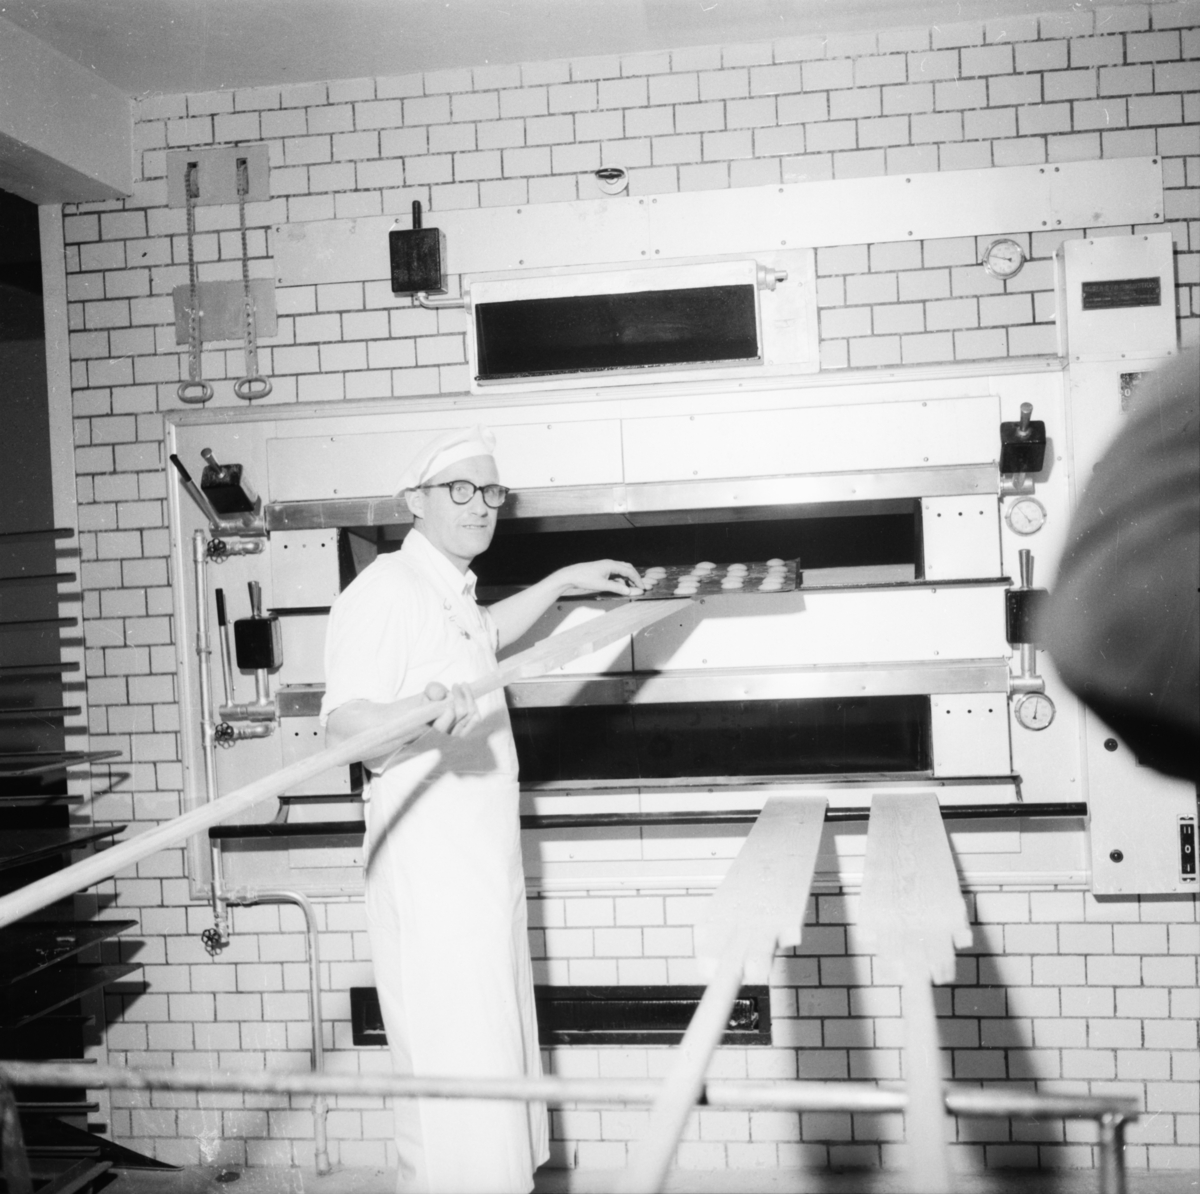 Vardens arkiv. "Lindvig åpner ny forretning og bakeri"  22.03.1954